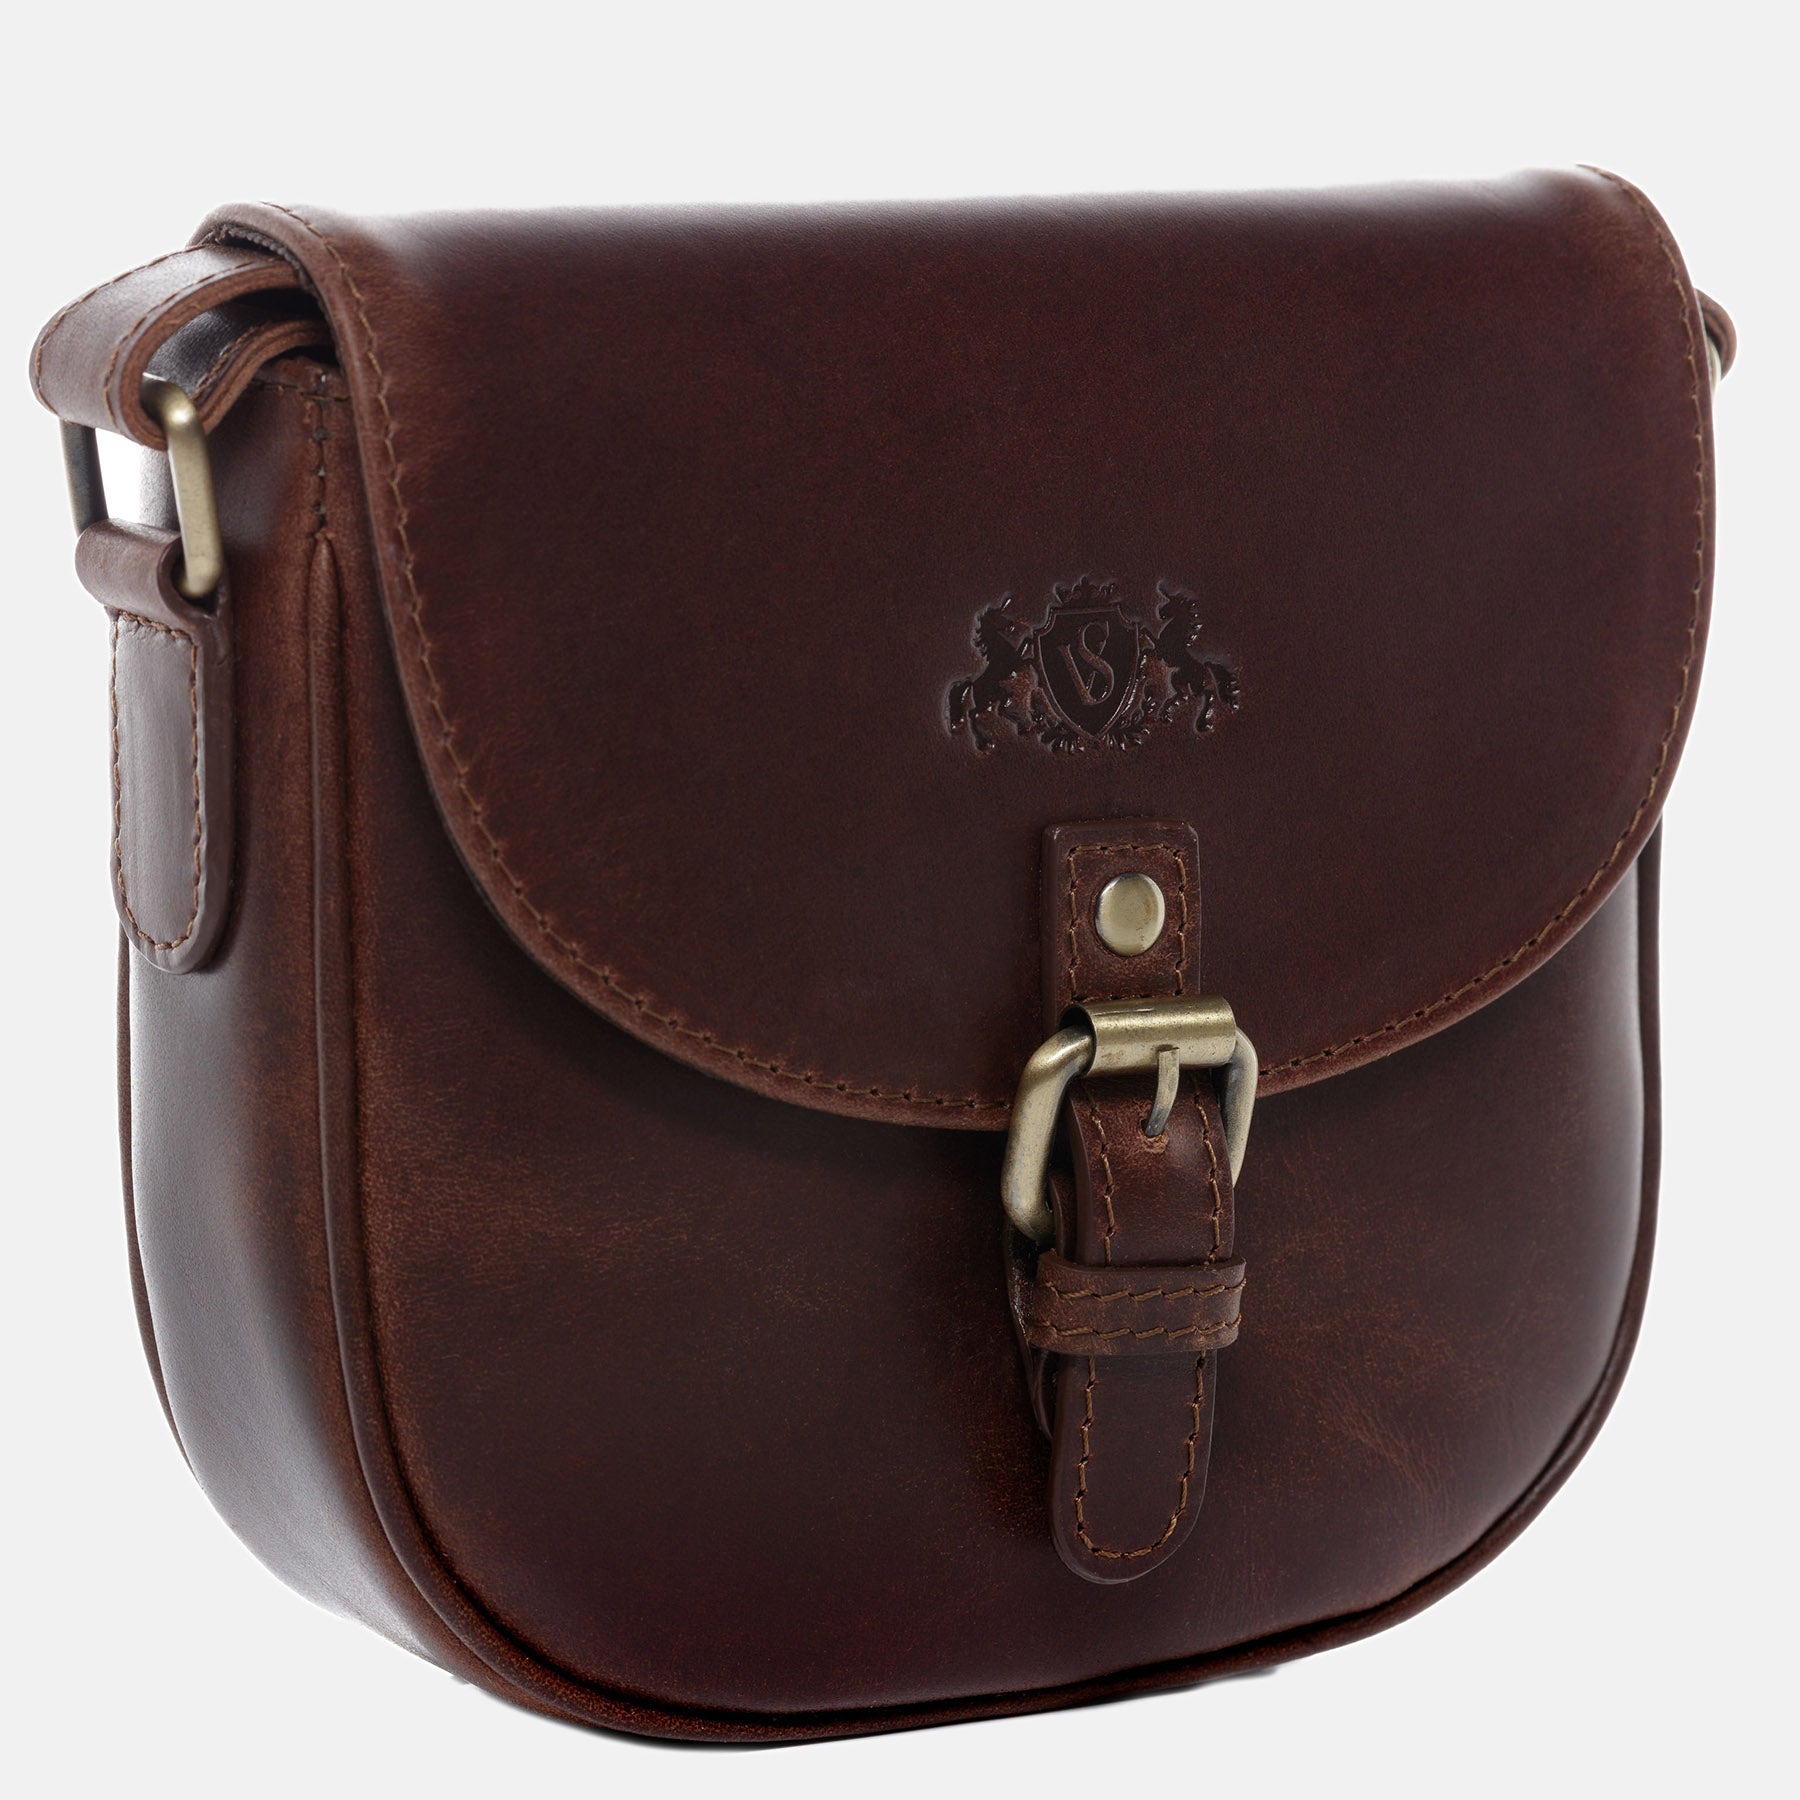 Shoulder bag JUNE natural leather brown-cognac